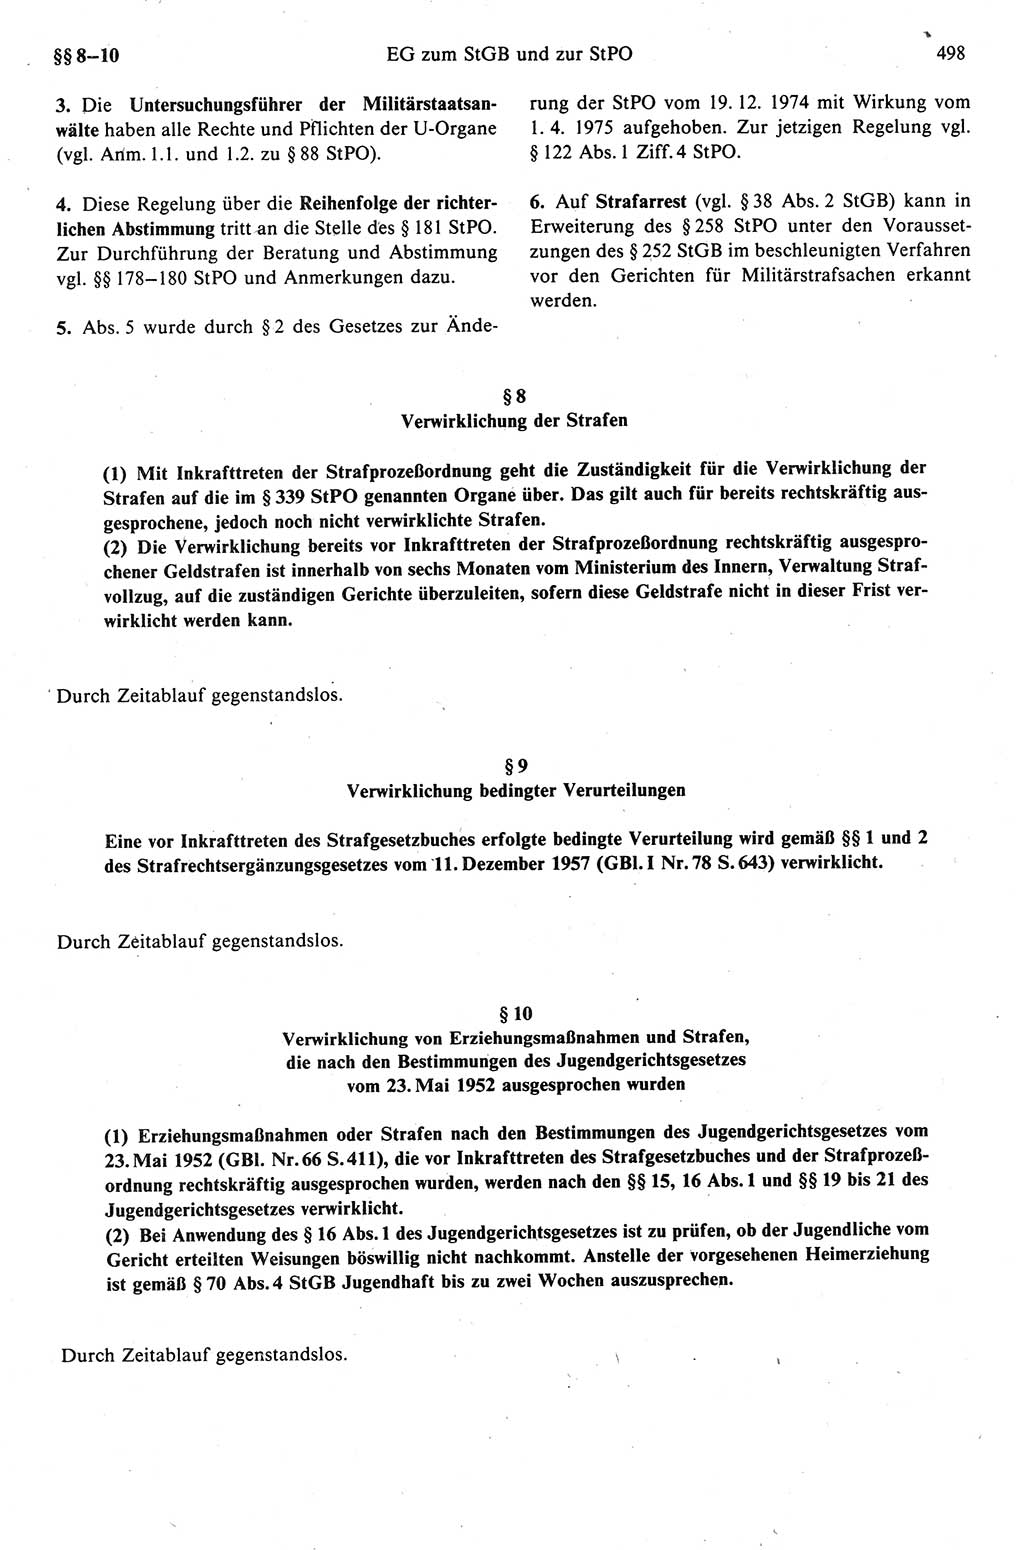 Strafprozeßrecht der DDR (Deutsche Demokratische Republik), Kommentar zur Strafprozeßordnung (StPO) 1989, Seite 498 (Strafprozeßr. DDR Komm. StPO 1989, S. 498)